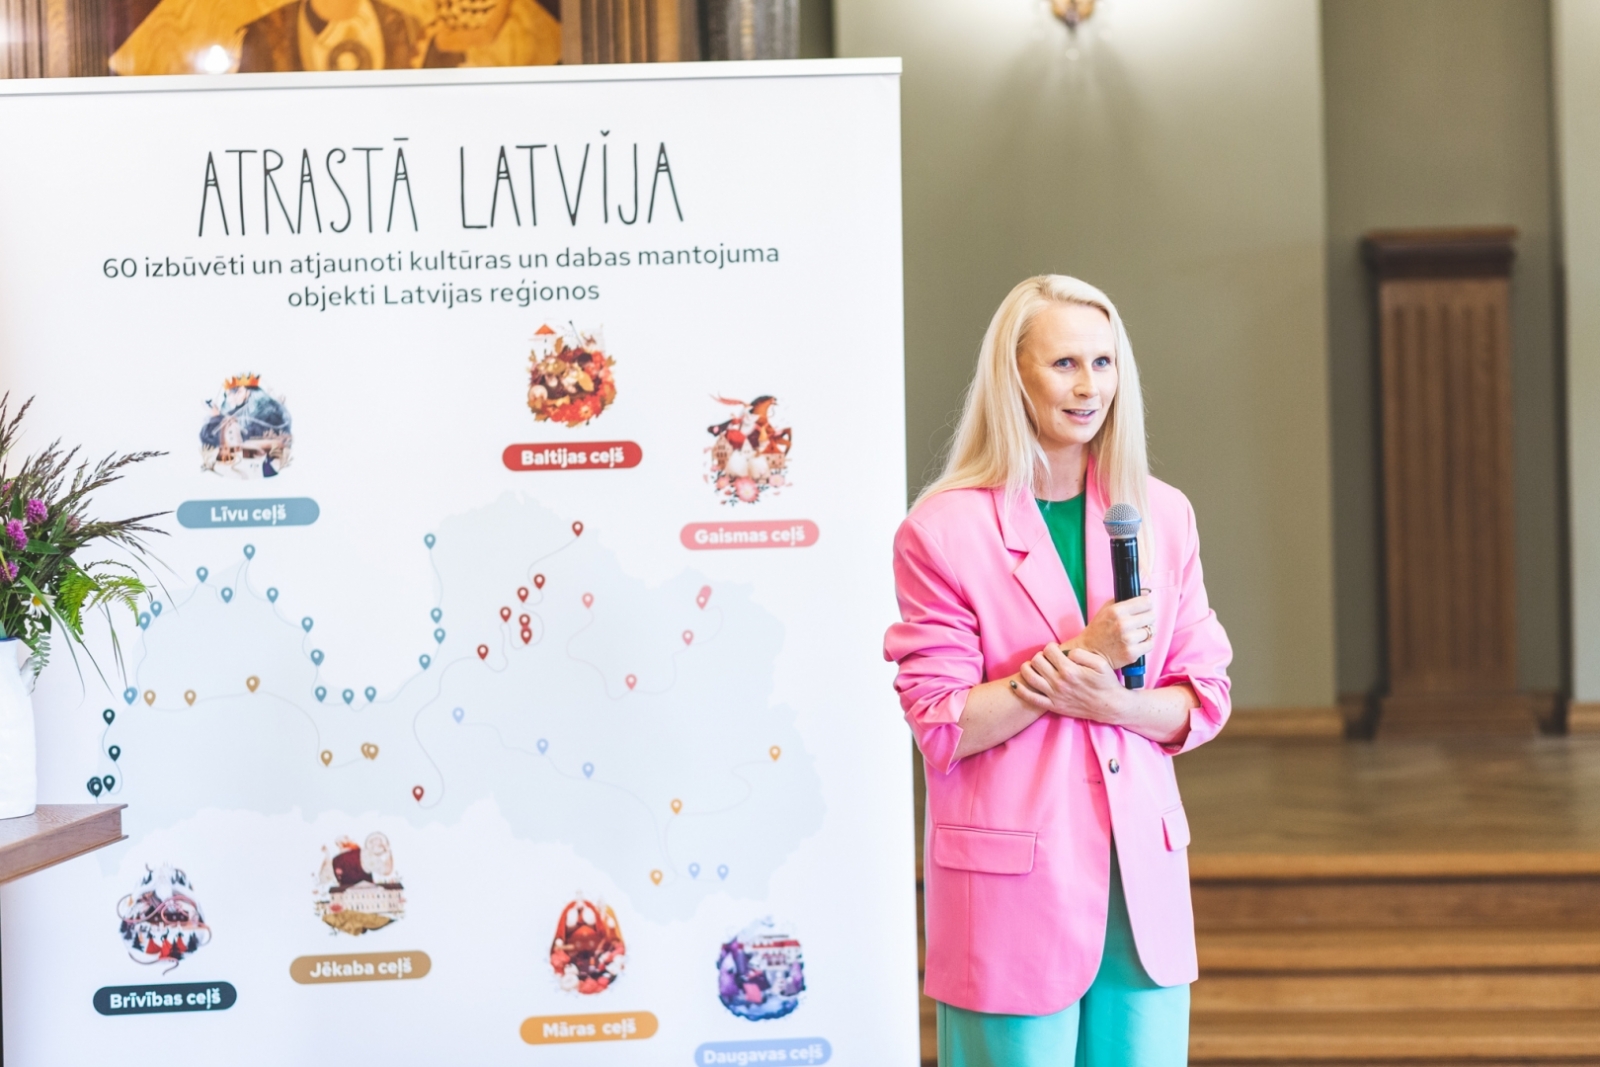 grāmatas “Atrastā Latvija” atvēršanas svētki un informatīvās kampaņas atklāšana